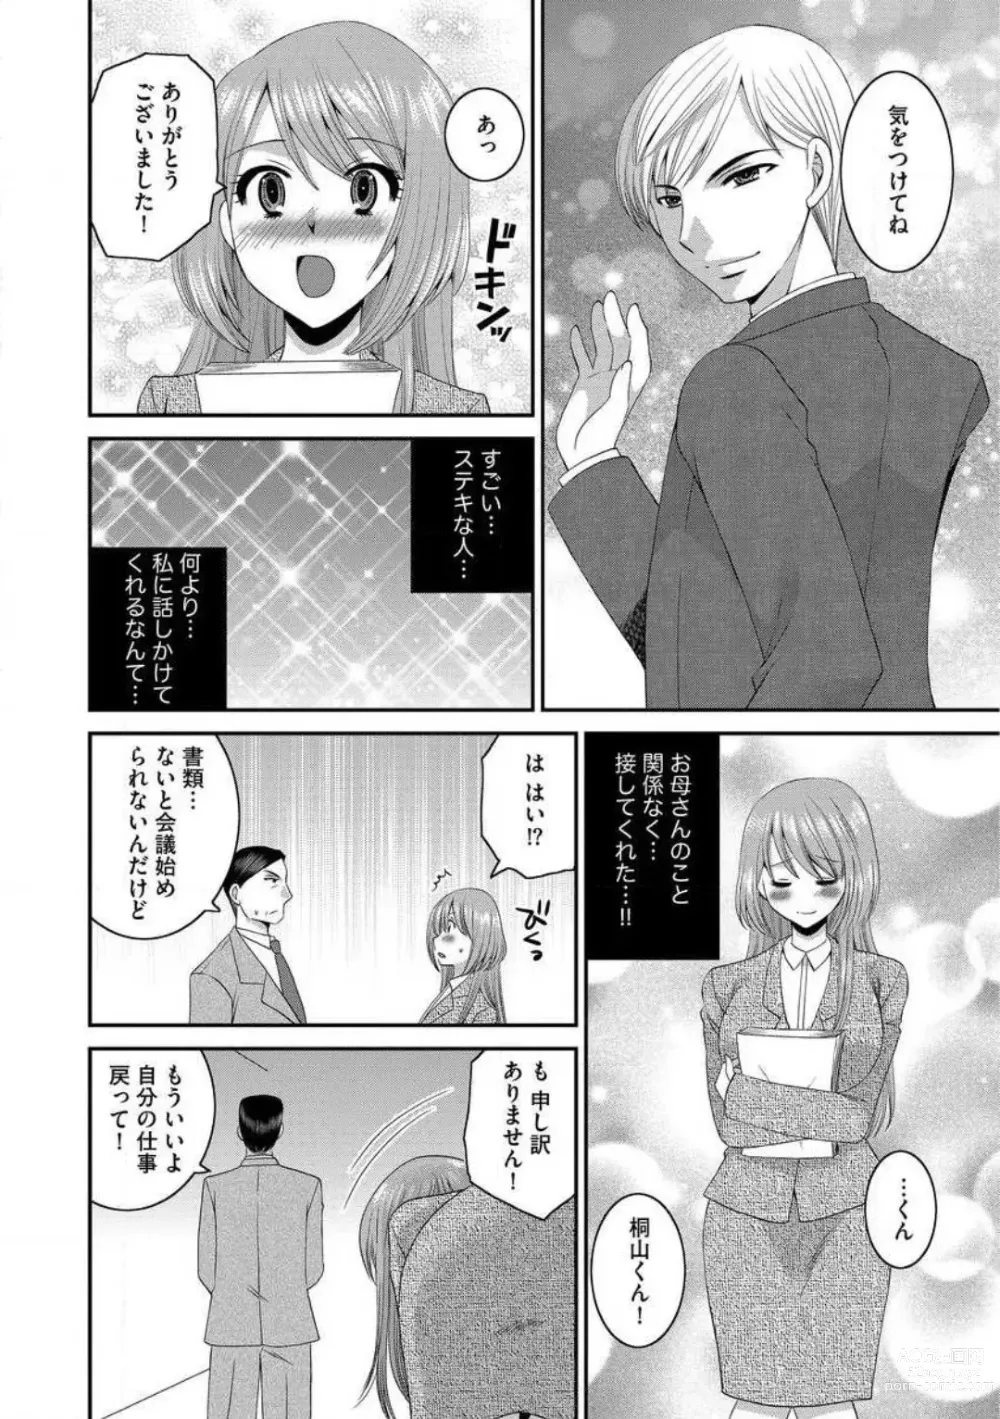 Page 4 of manga Otou-san to Ecchi. 1-6